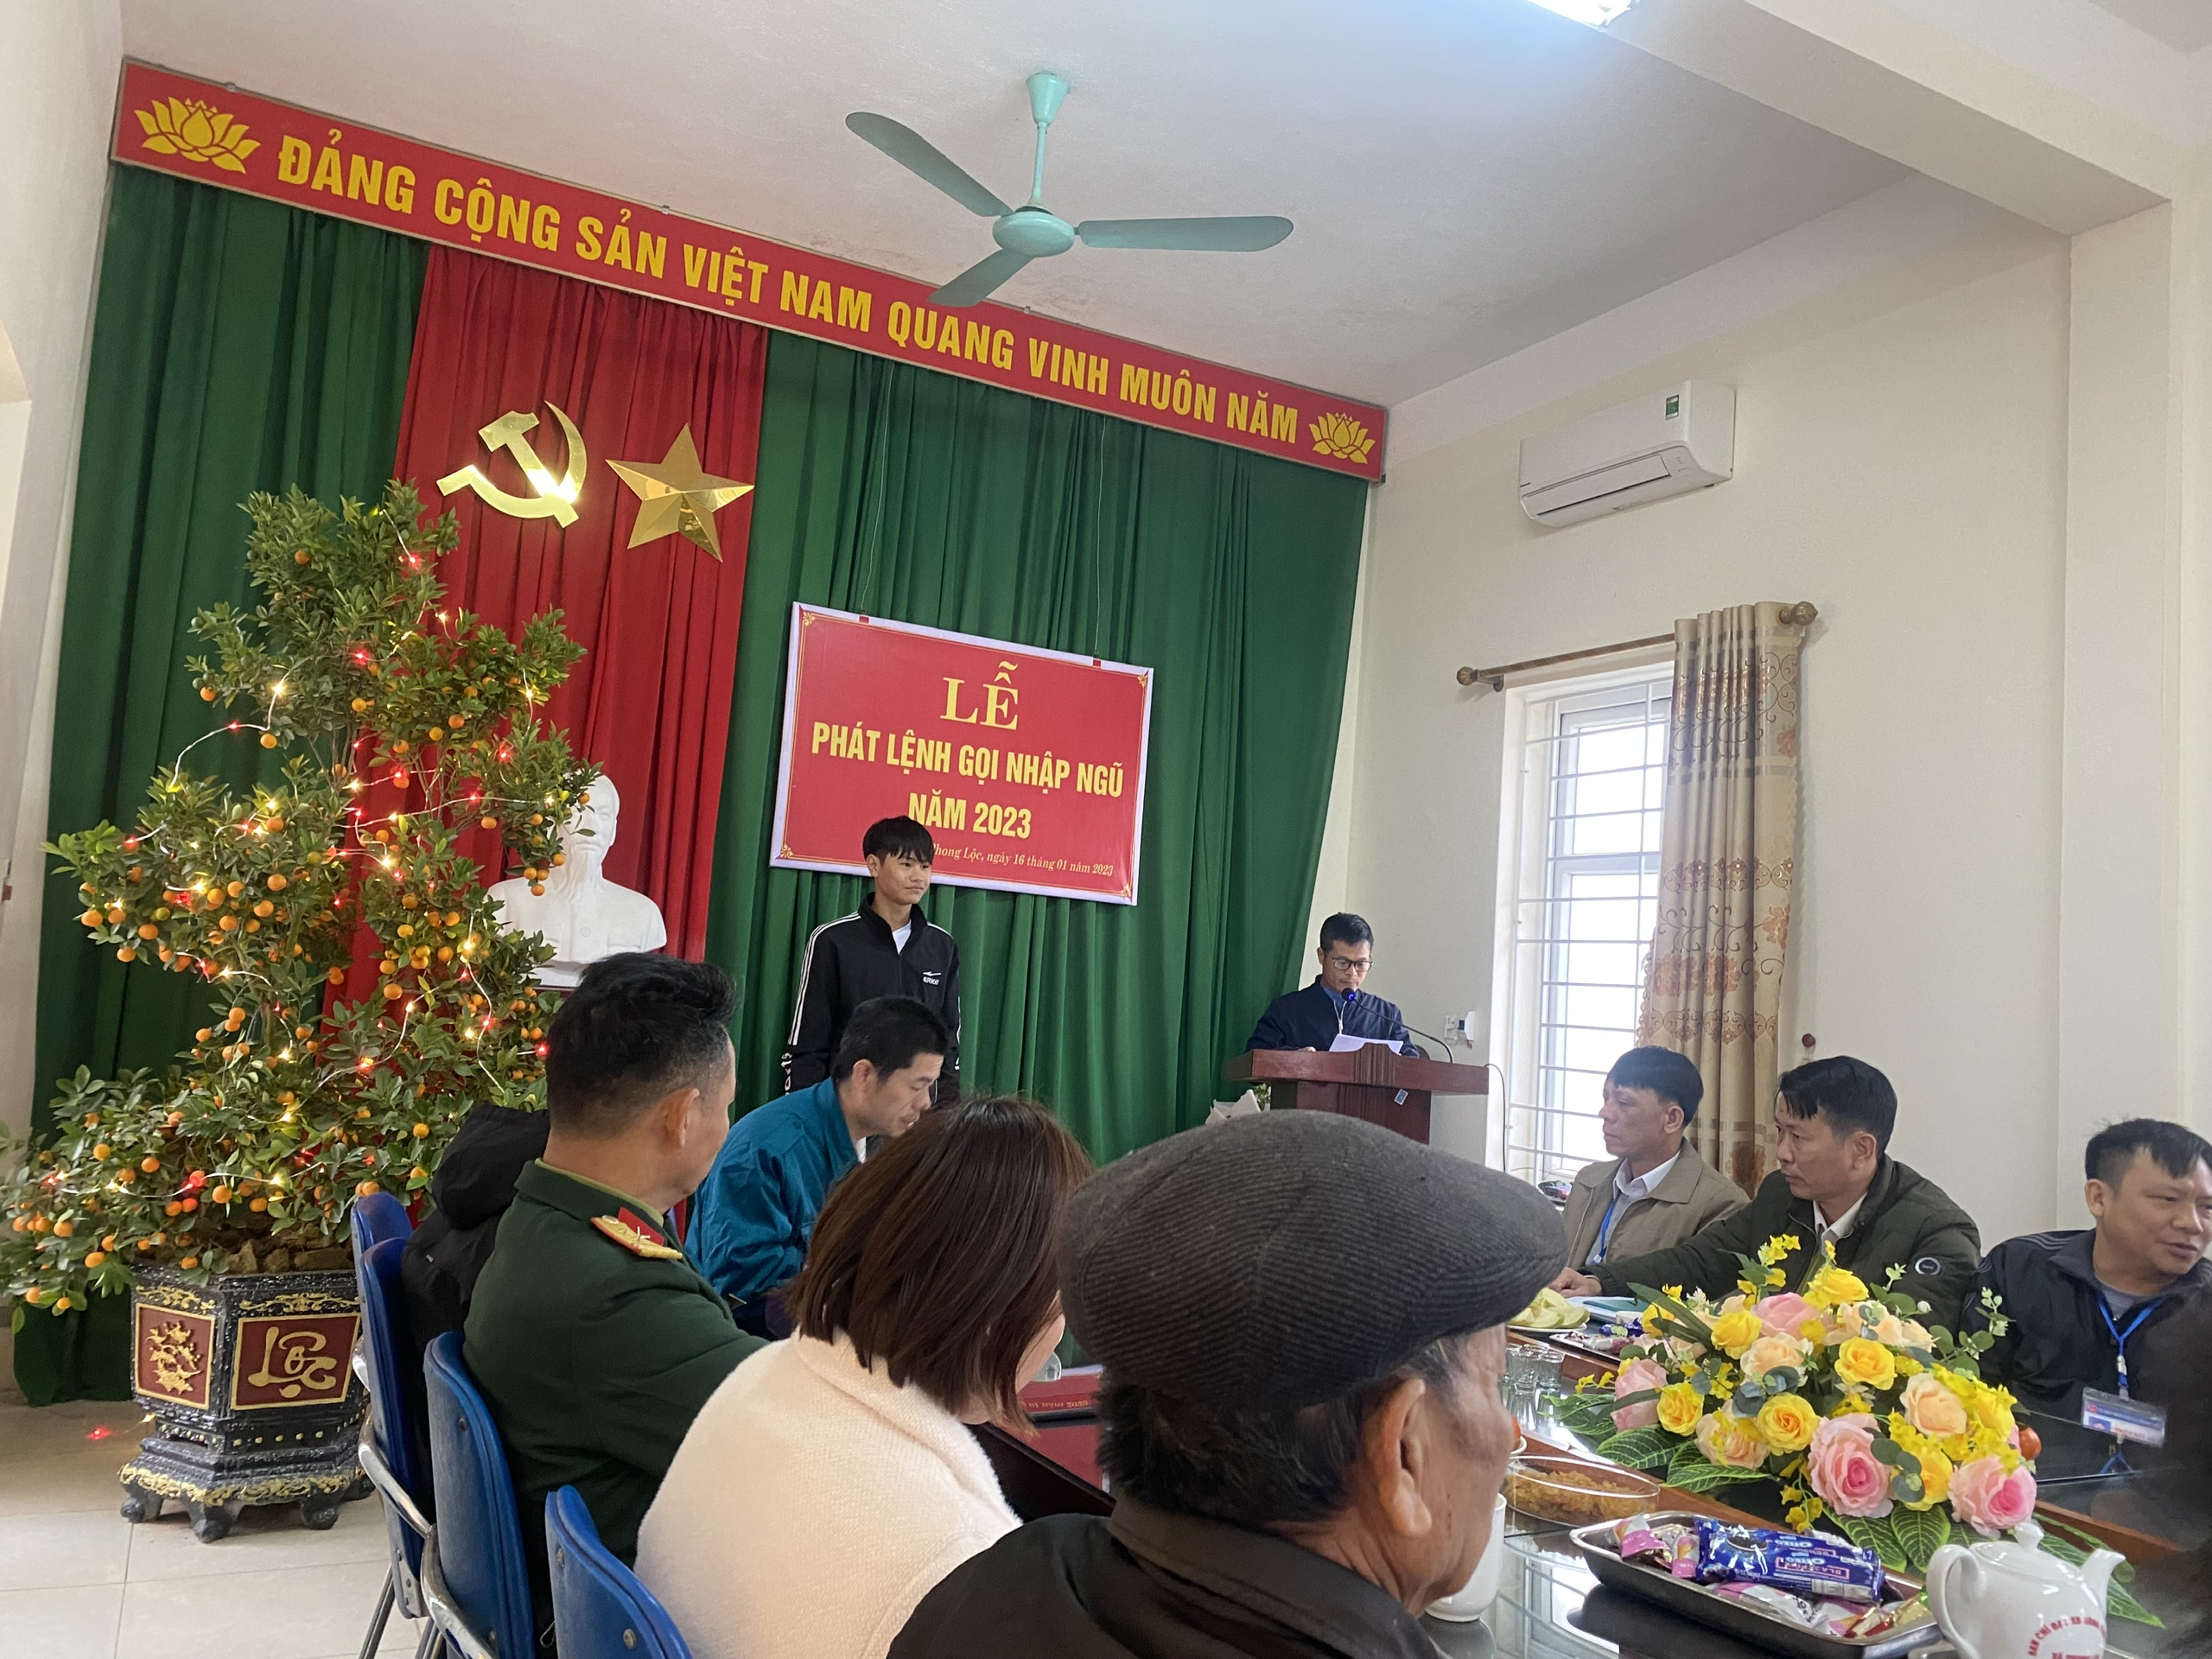 Ngày 16 tháng 01 năm 2023, Ban chỉ huy quân sự xã Phong Lộc đã tổ chức buổi lễ Phát lệnh gọi nhập ngũ năm 2023